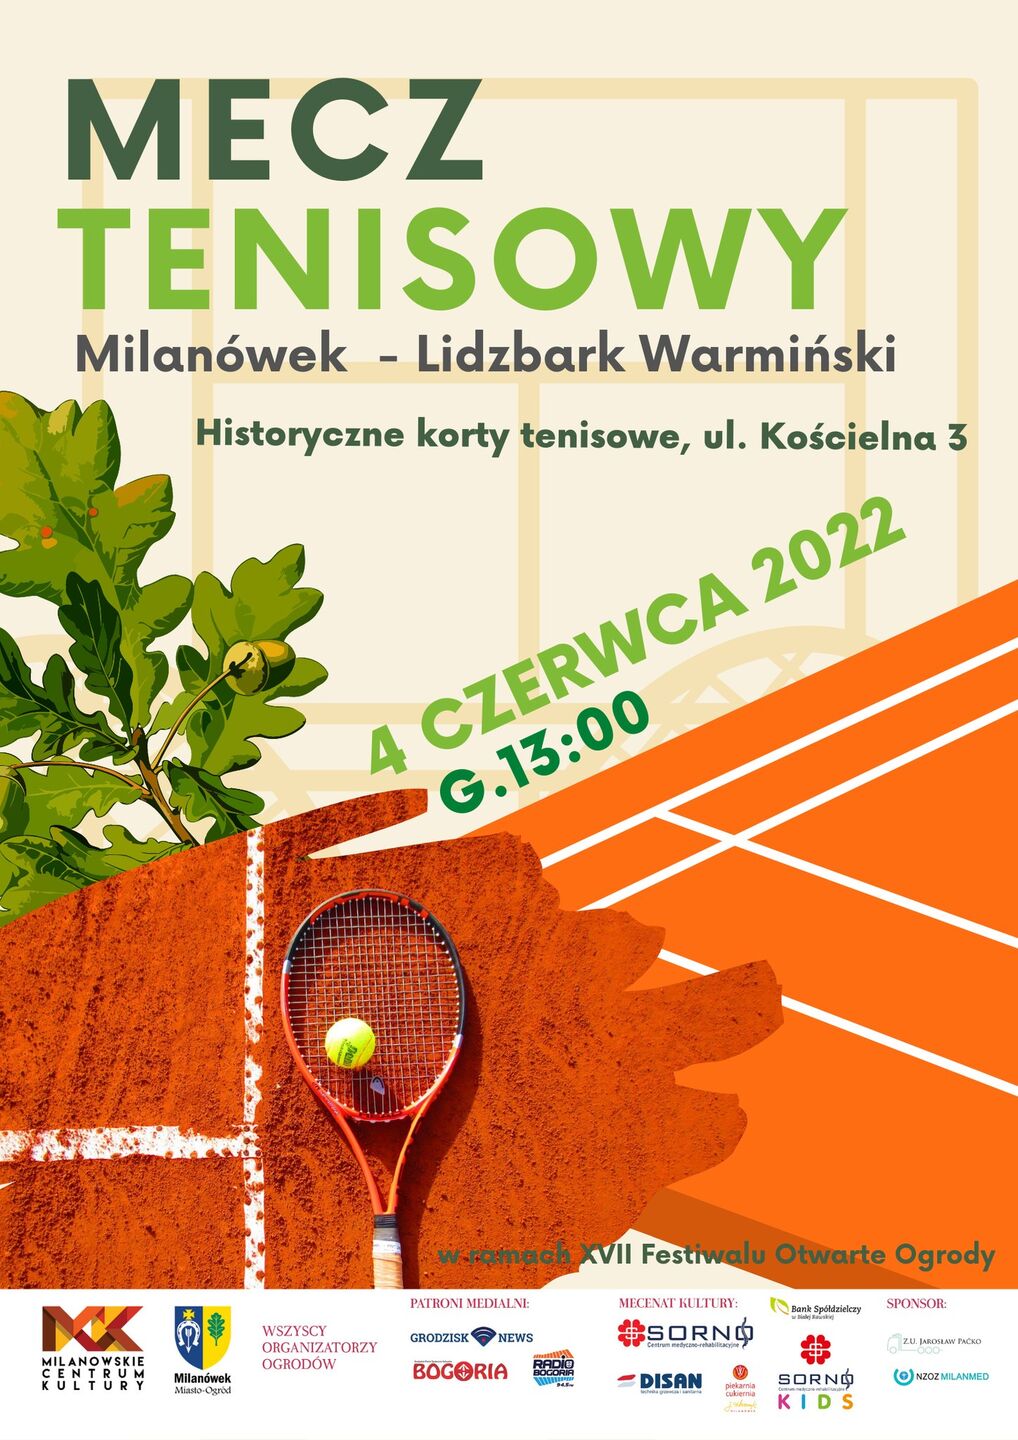 Mecz tenisowy: Milanówek-Lidzbark Warmiński